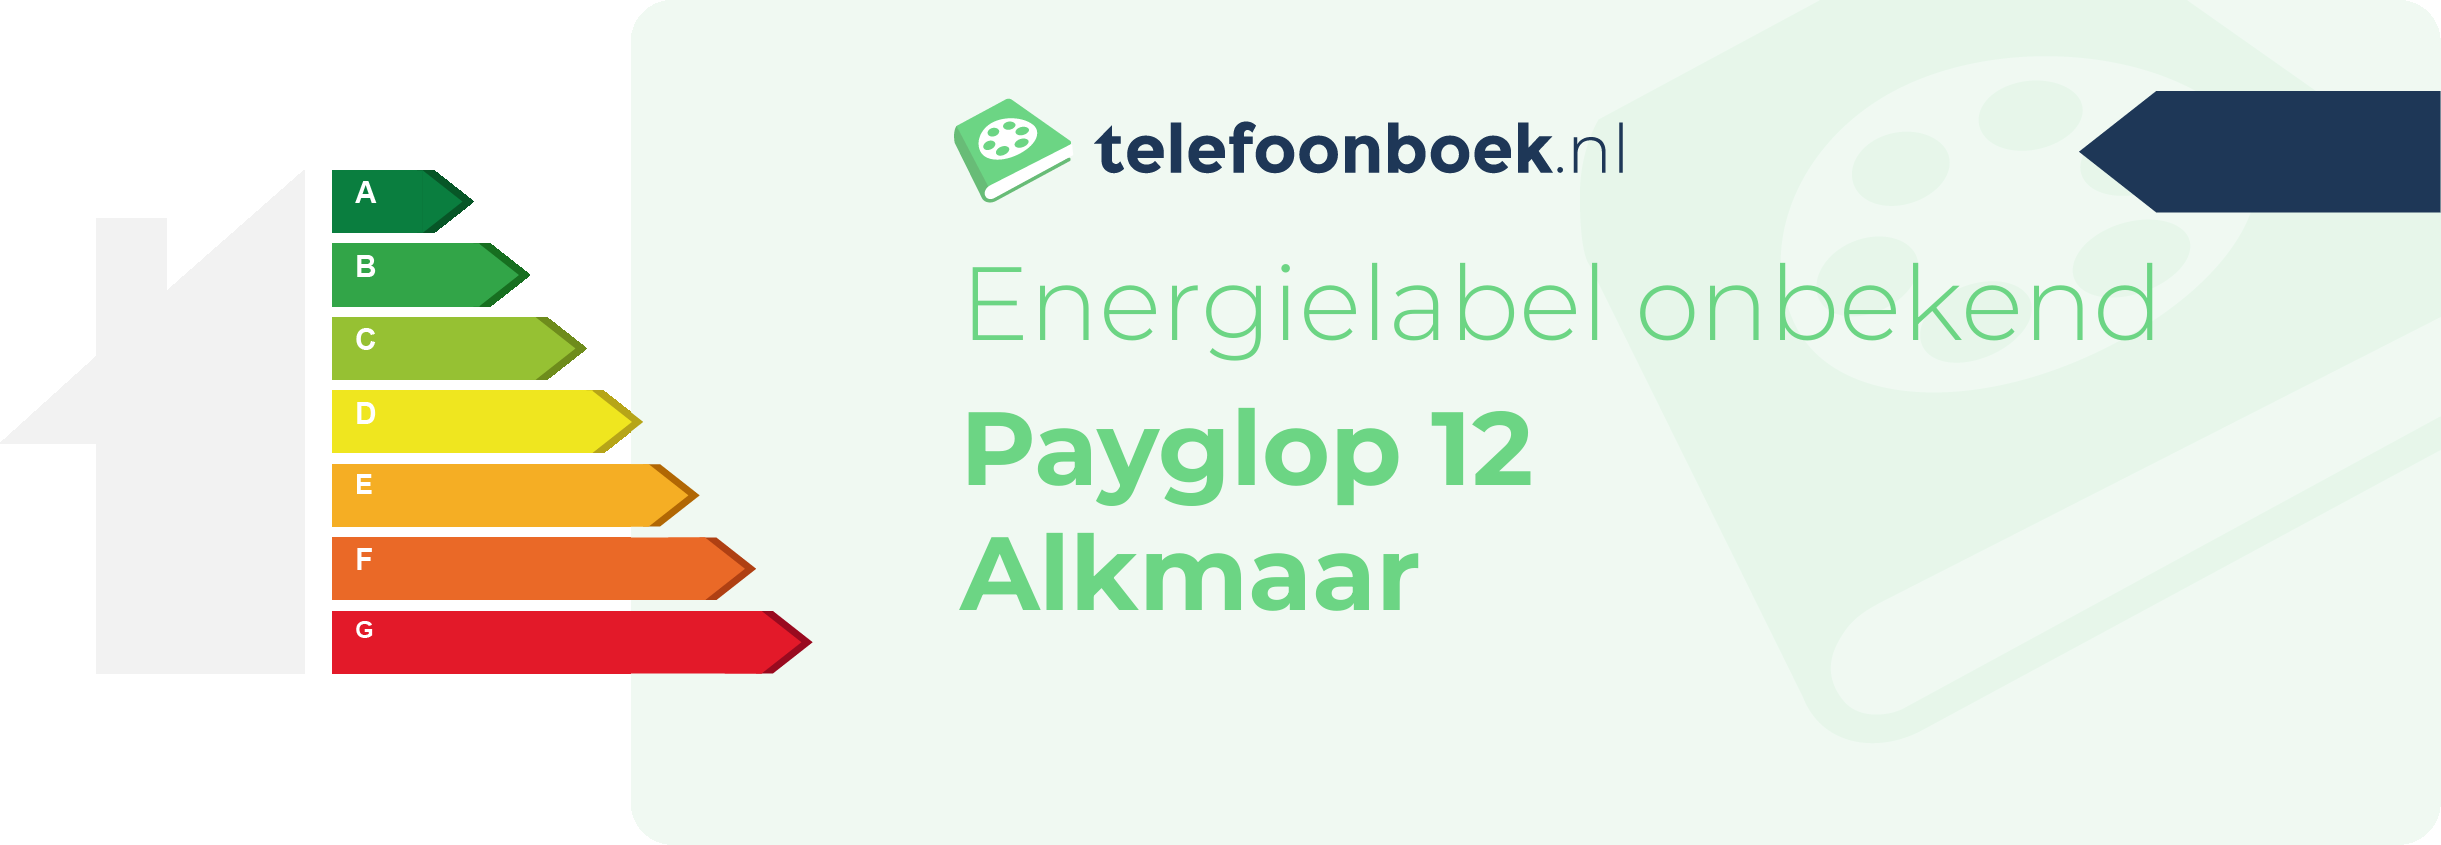 Energielabel Payglop 12 Alkmaar